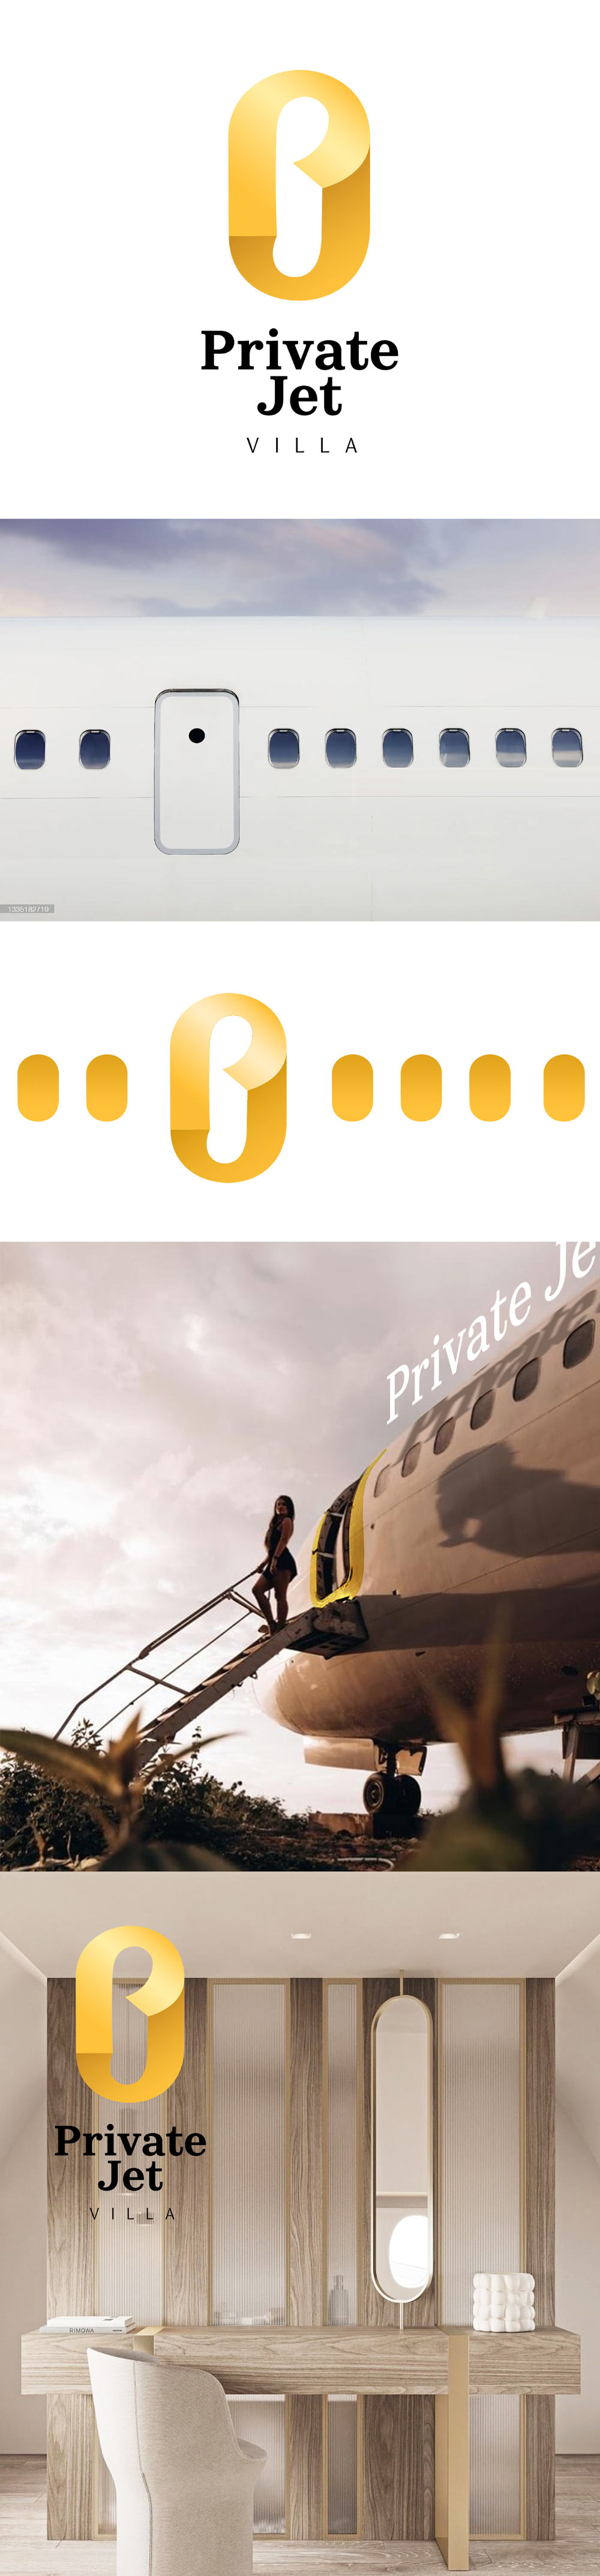 private jet villa process 01